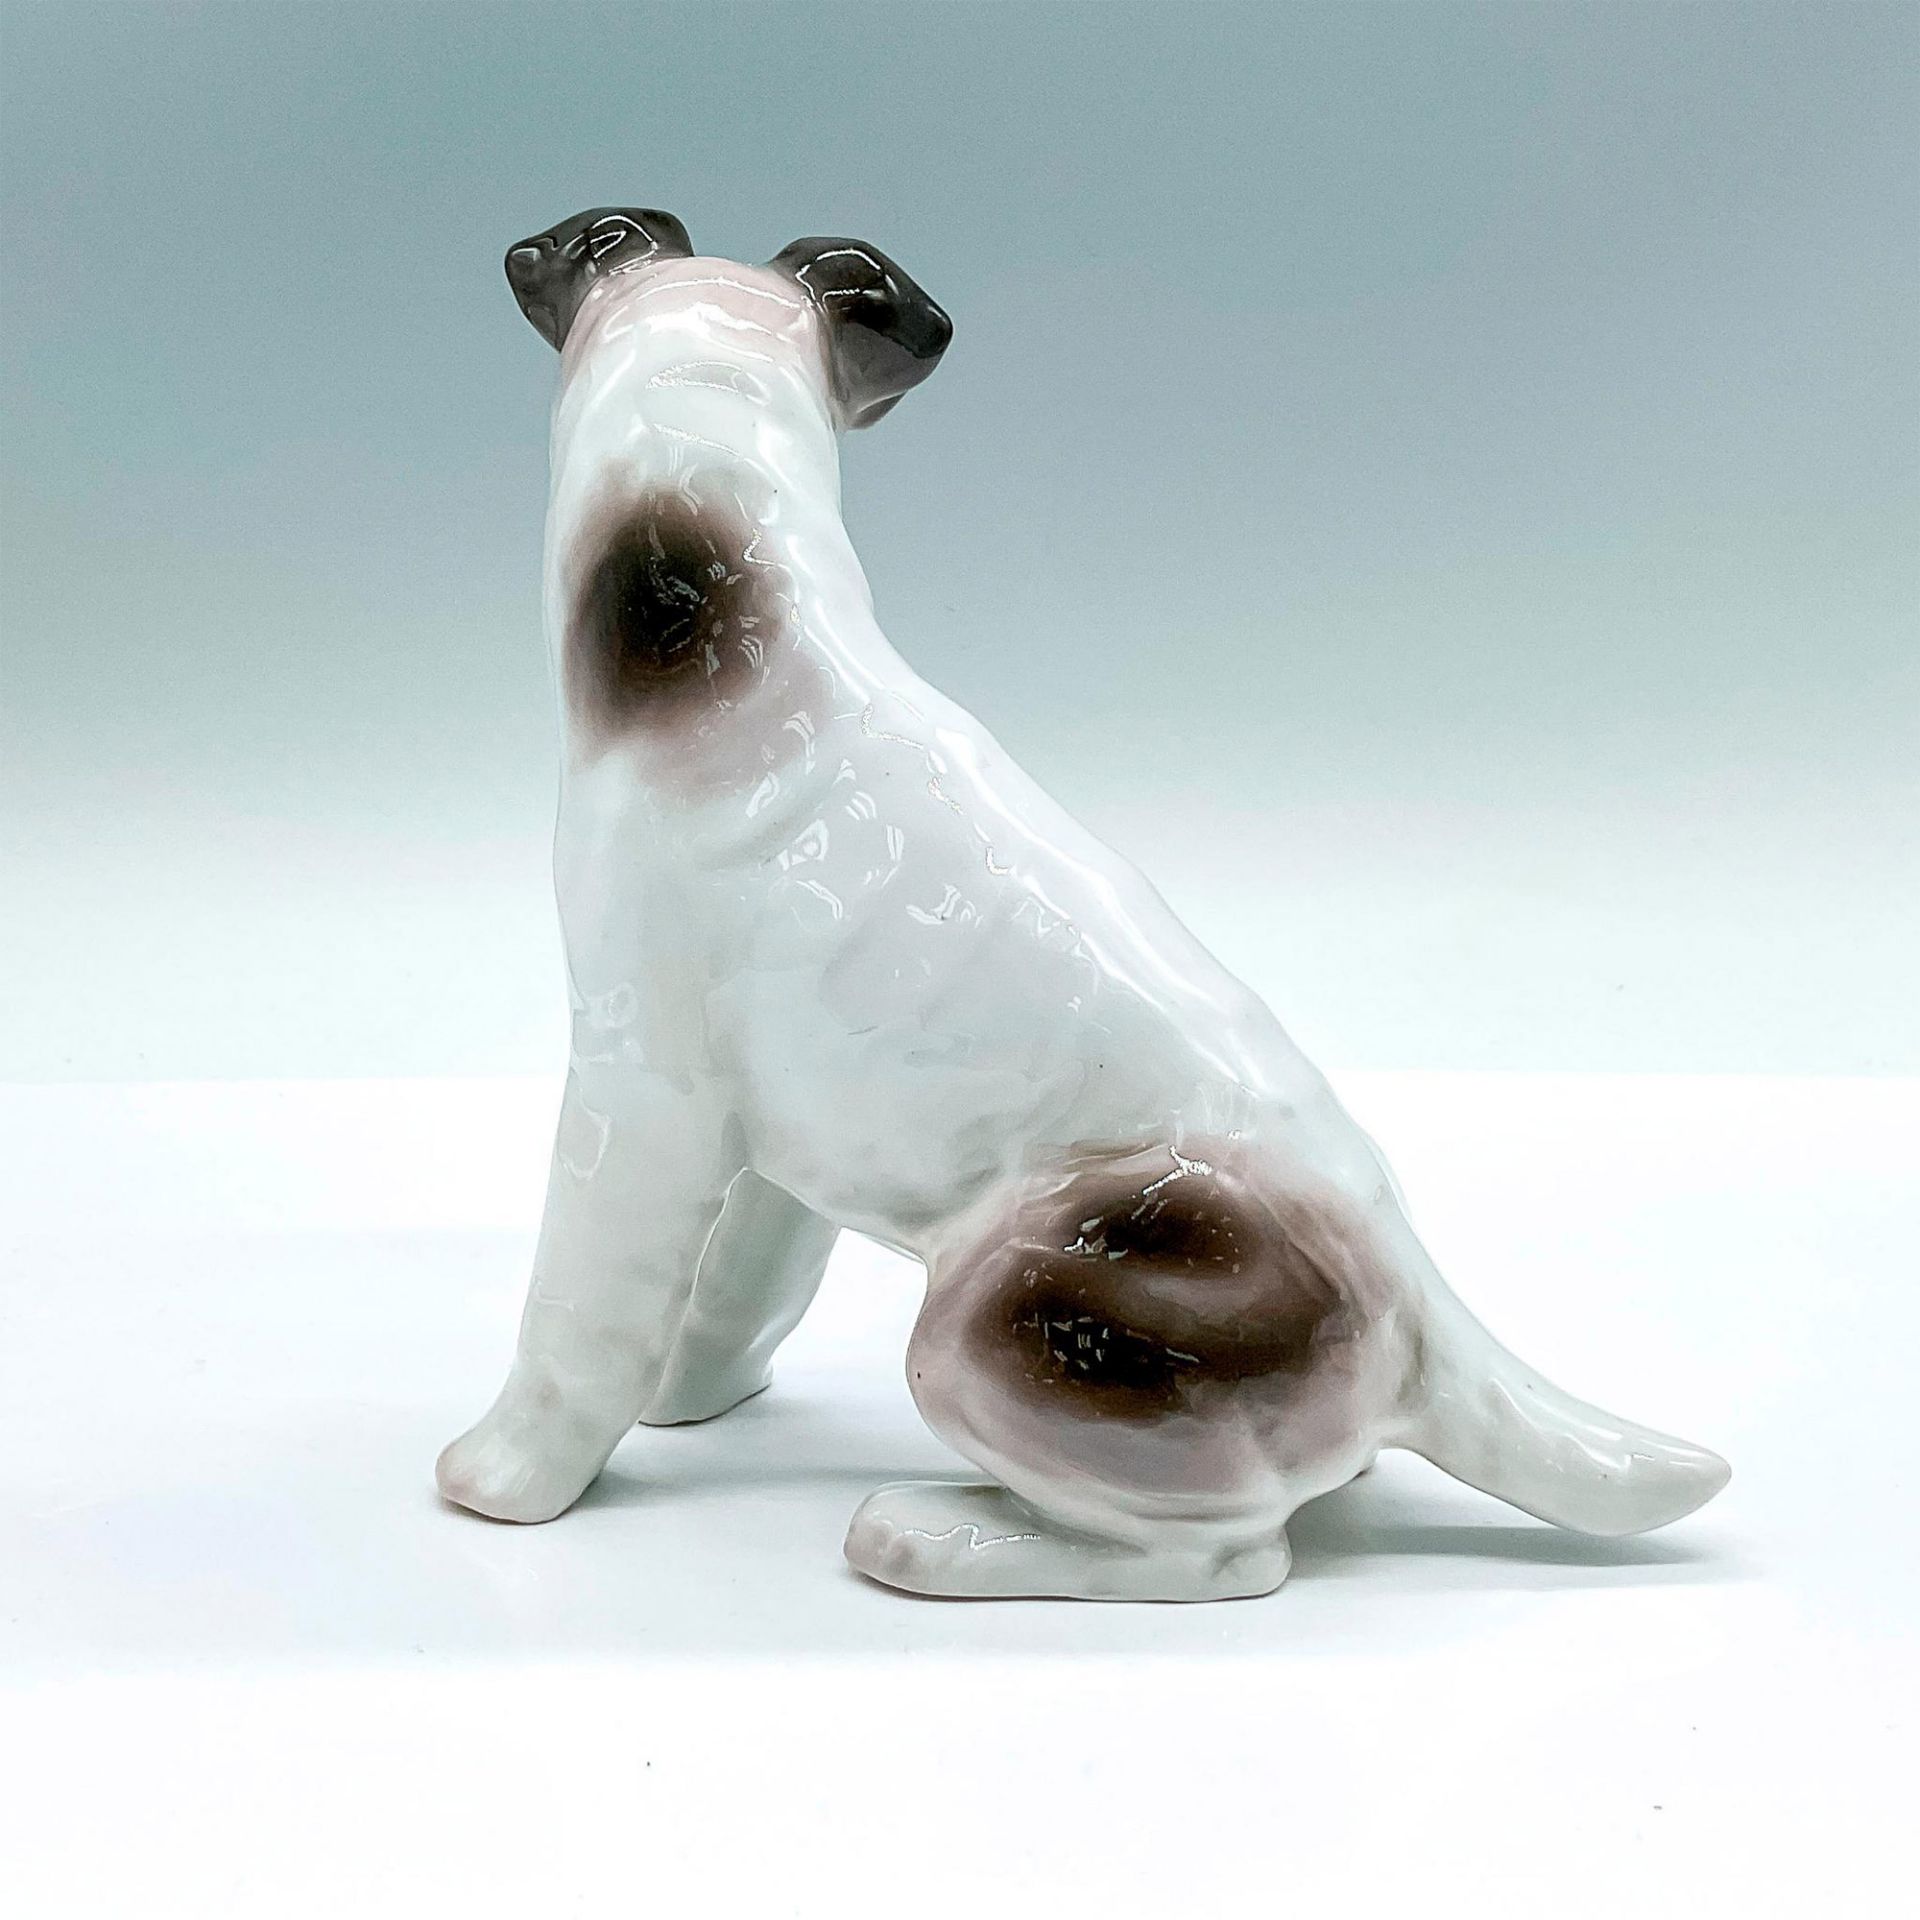 Vintage Pfeffer Porcelain German Dog Figurine - Image 2 of 3